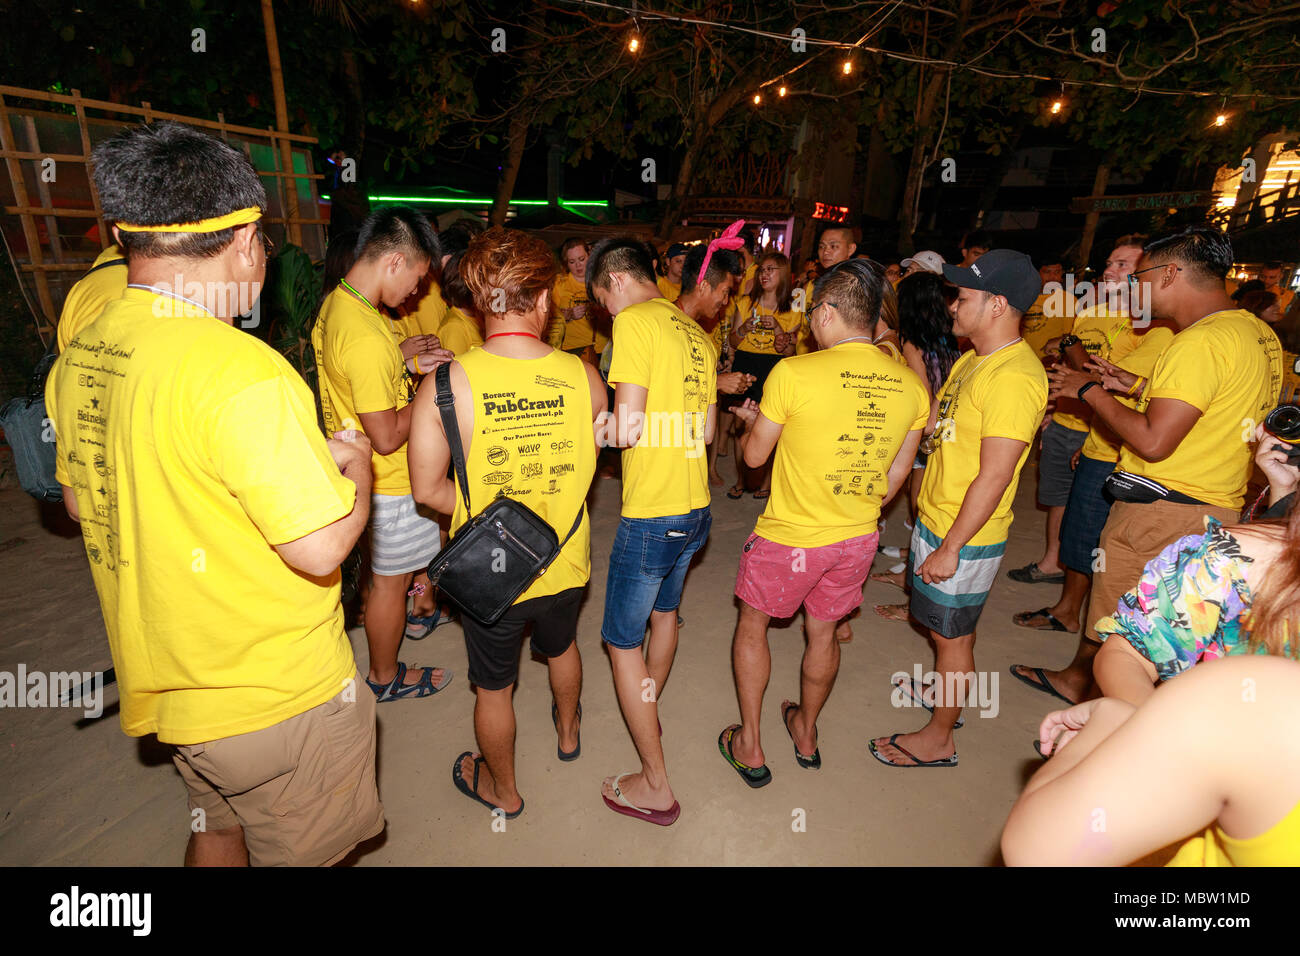 Boracay, Philippinen - 18.November 2017: Boracay Pubcrawl, Night Party, Freund in Boracay Stockfoto